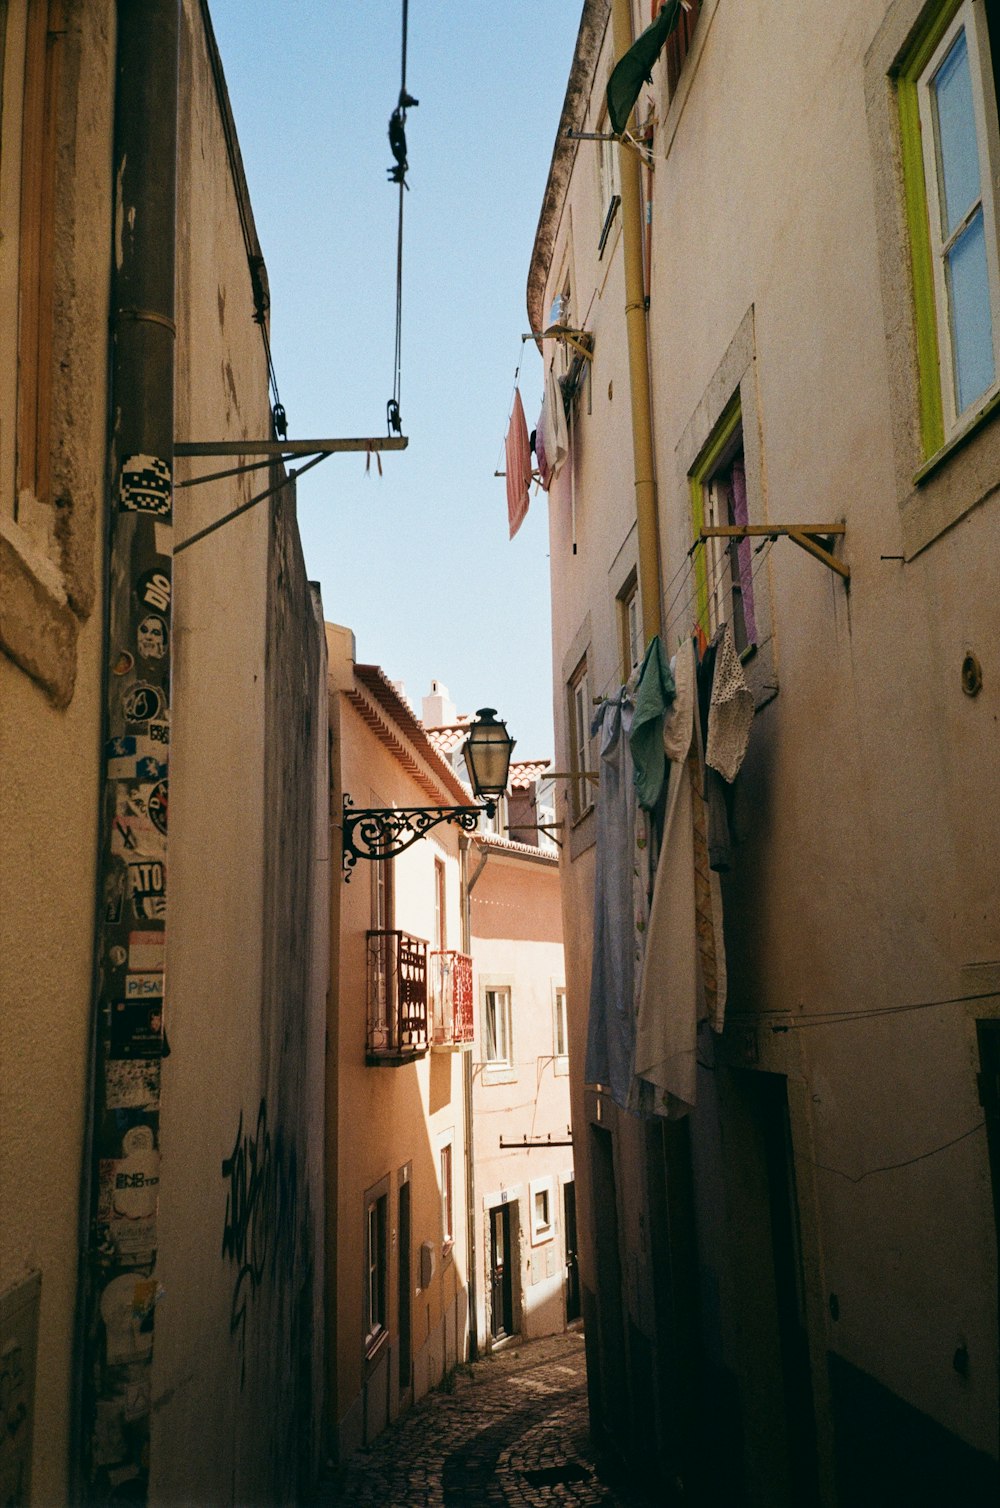 a narrow alley between buildings